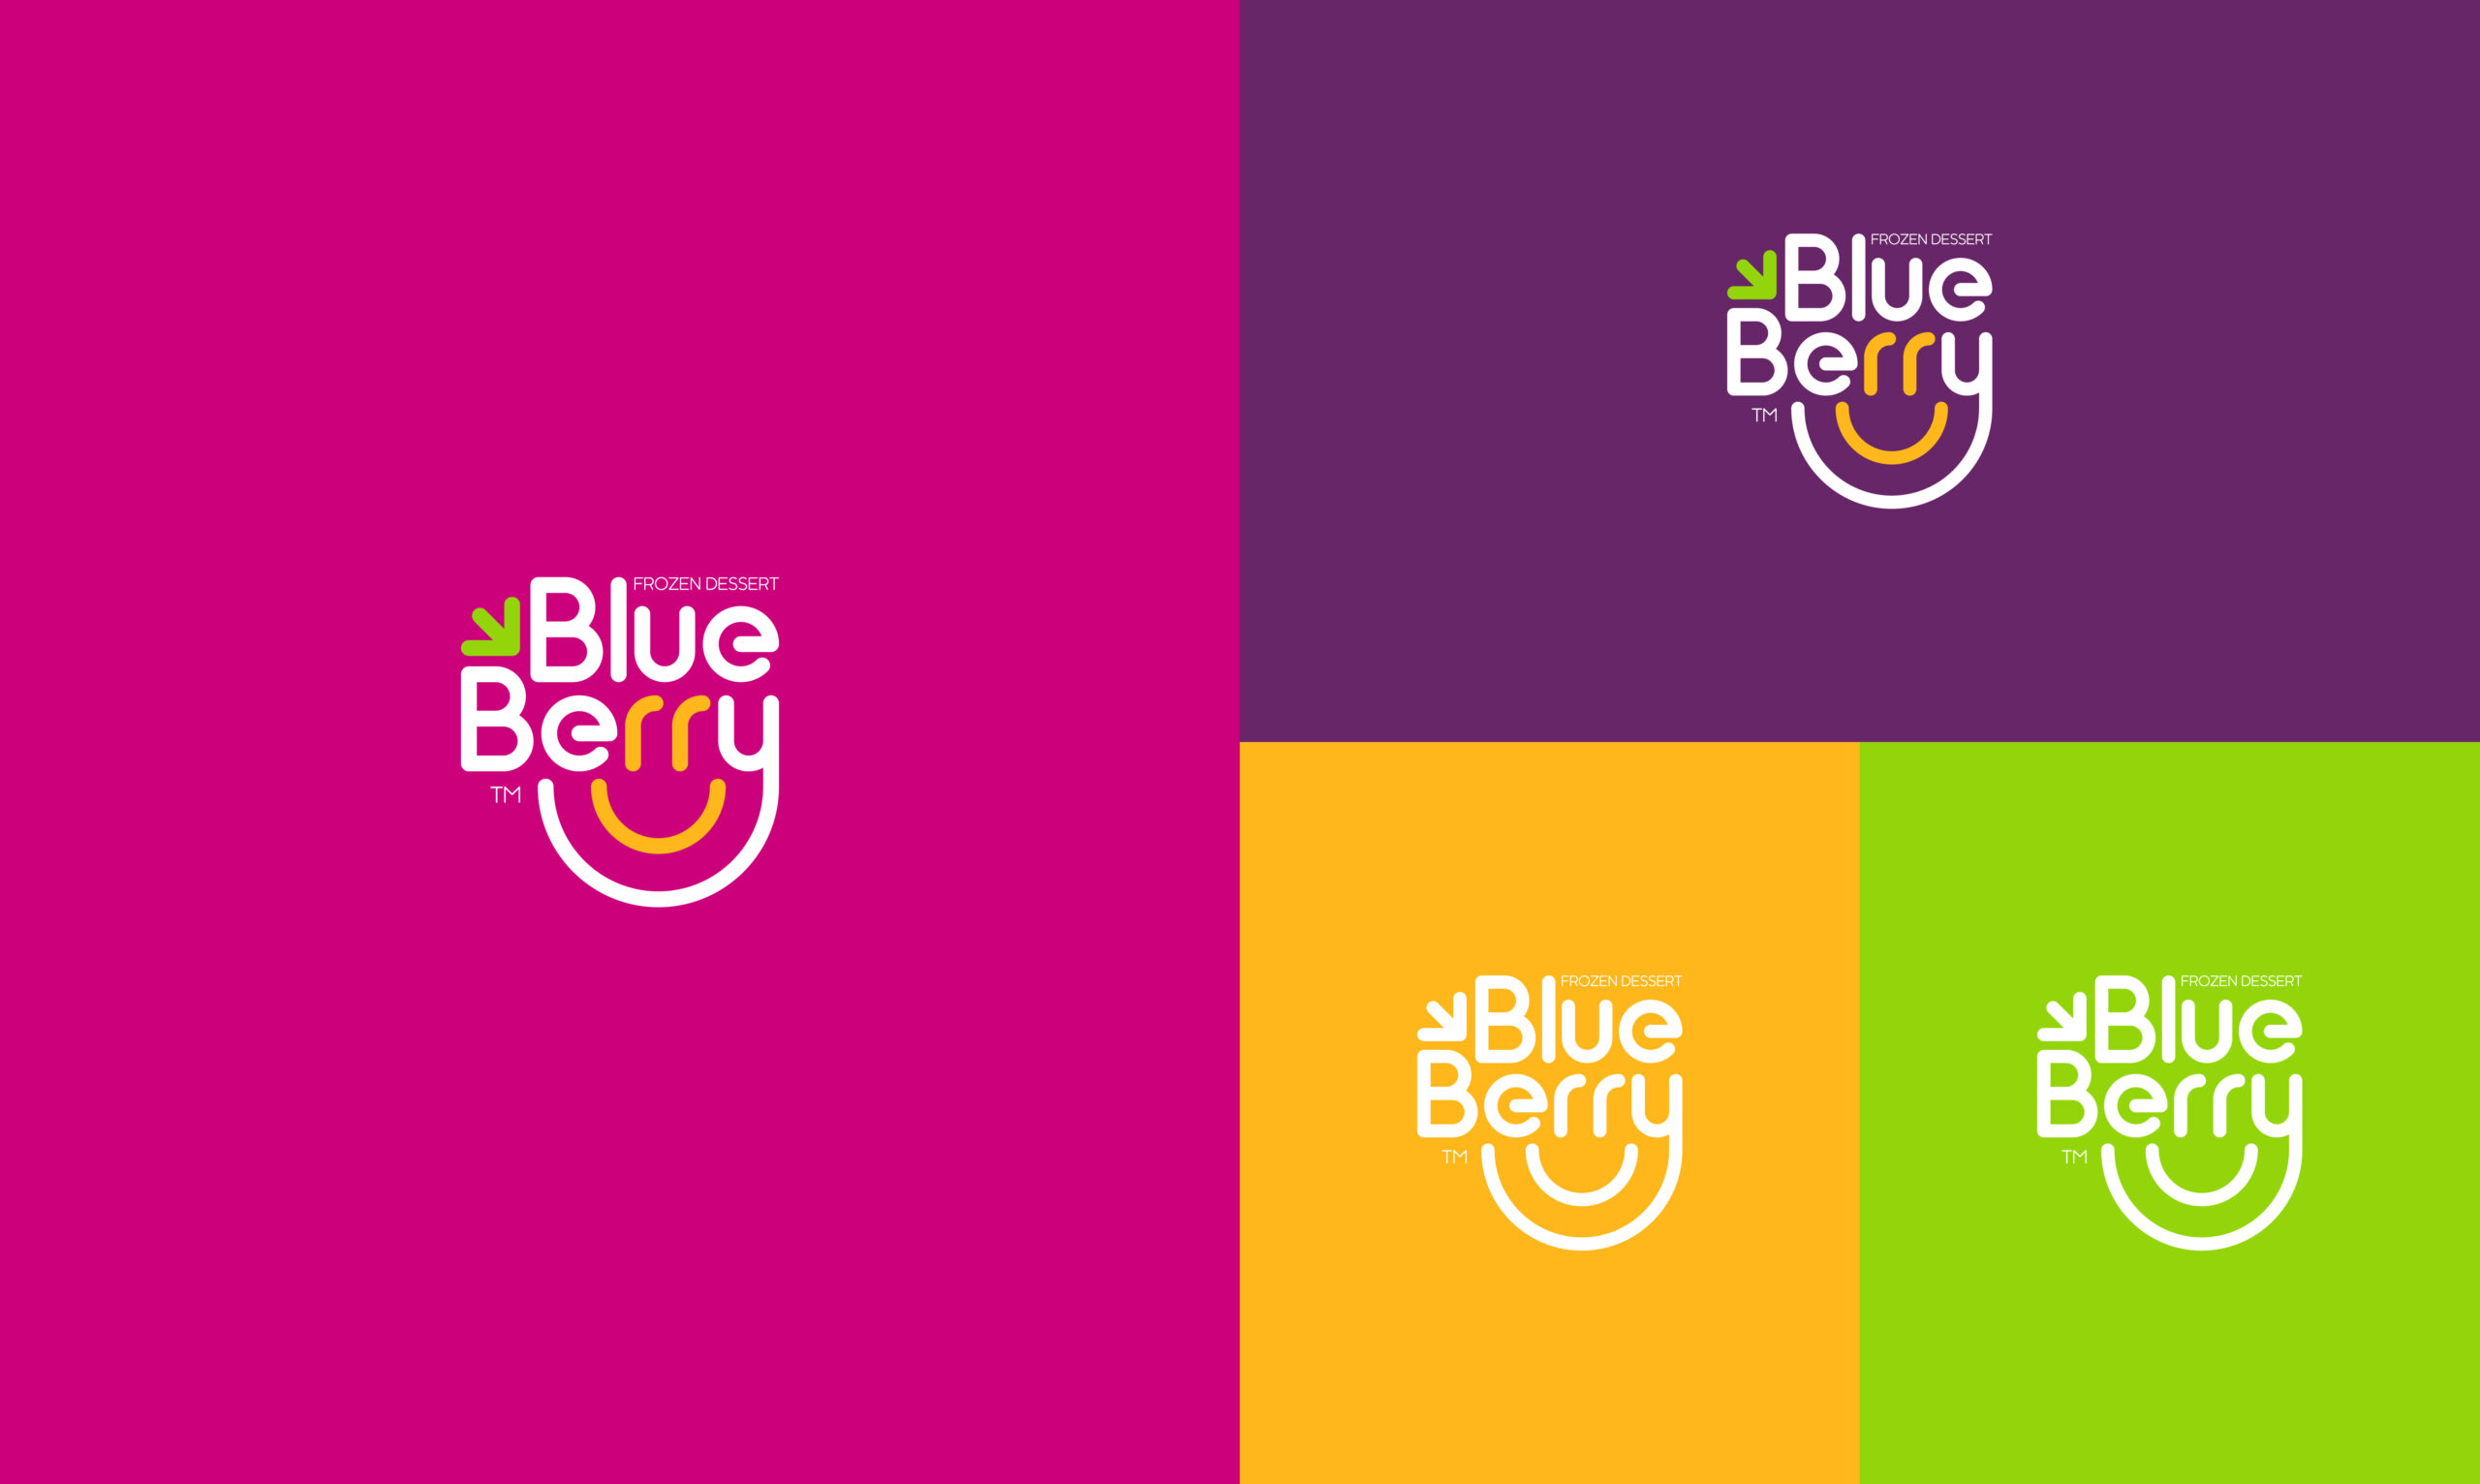 Blueberry-Frozen-Dessert-Branding-By-Millimeter-Creative-Agency-Cover-B01